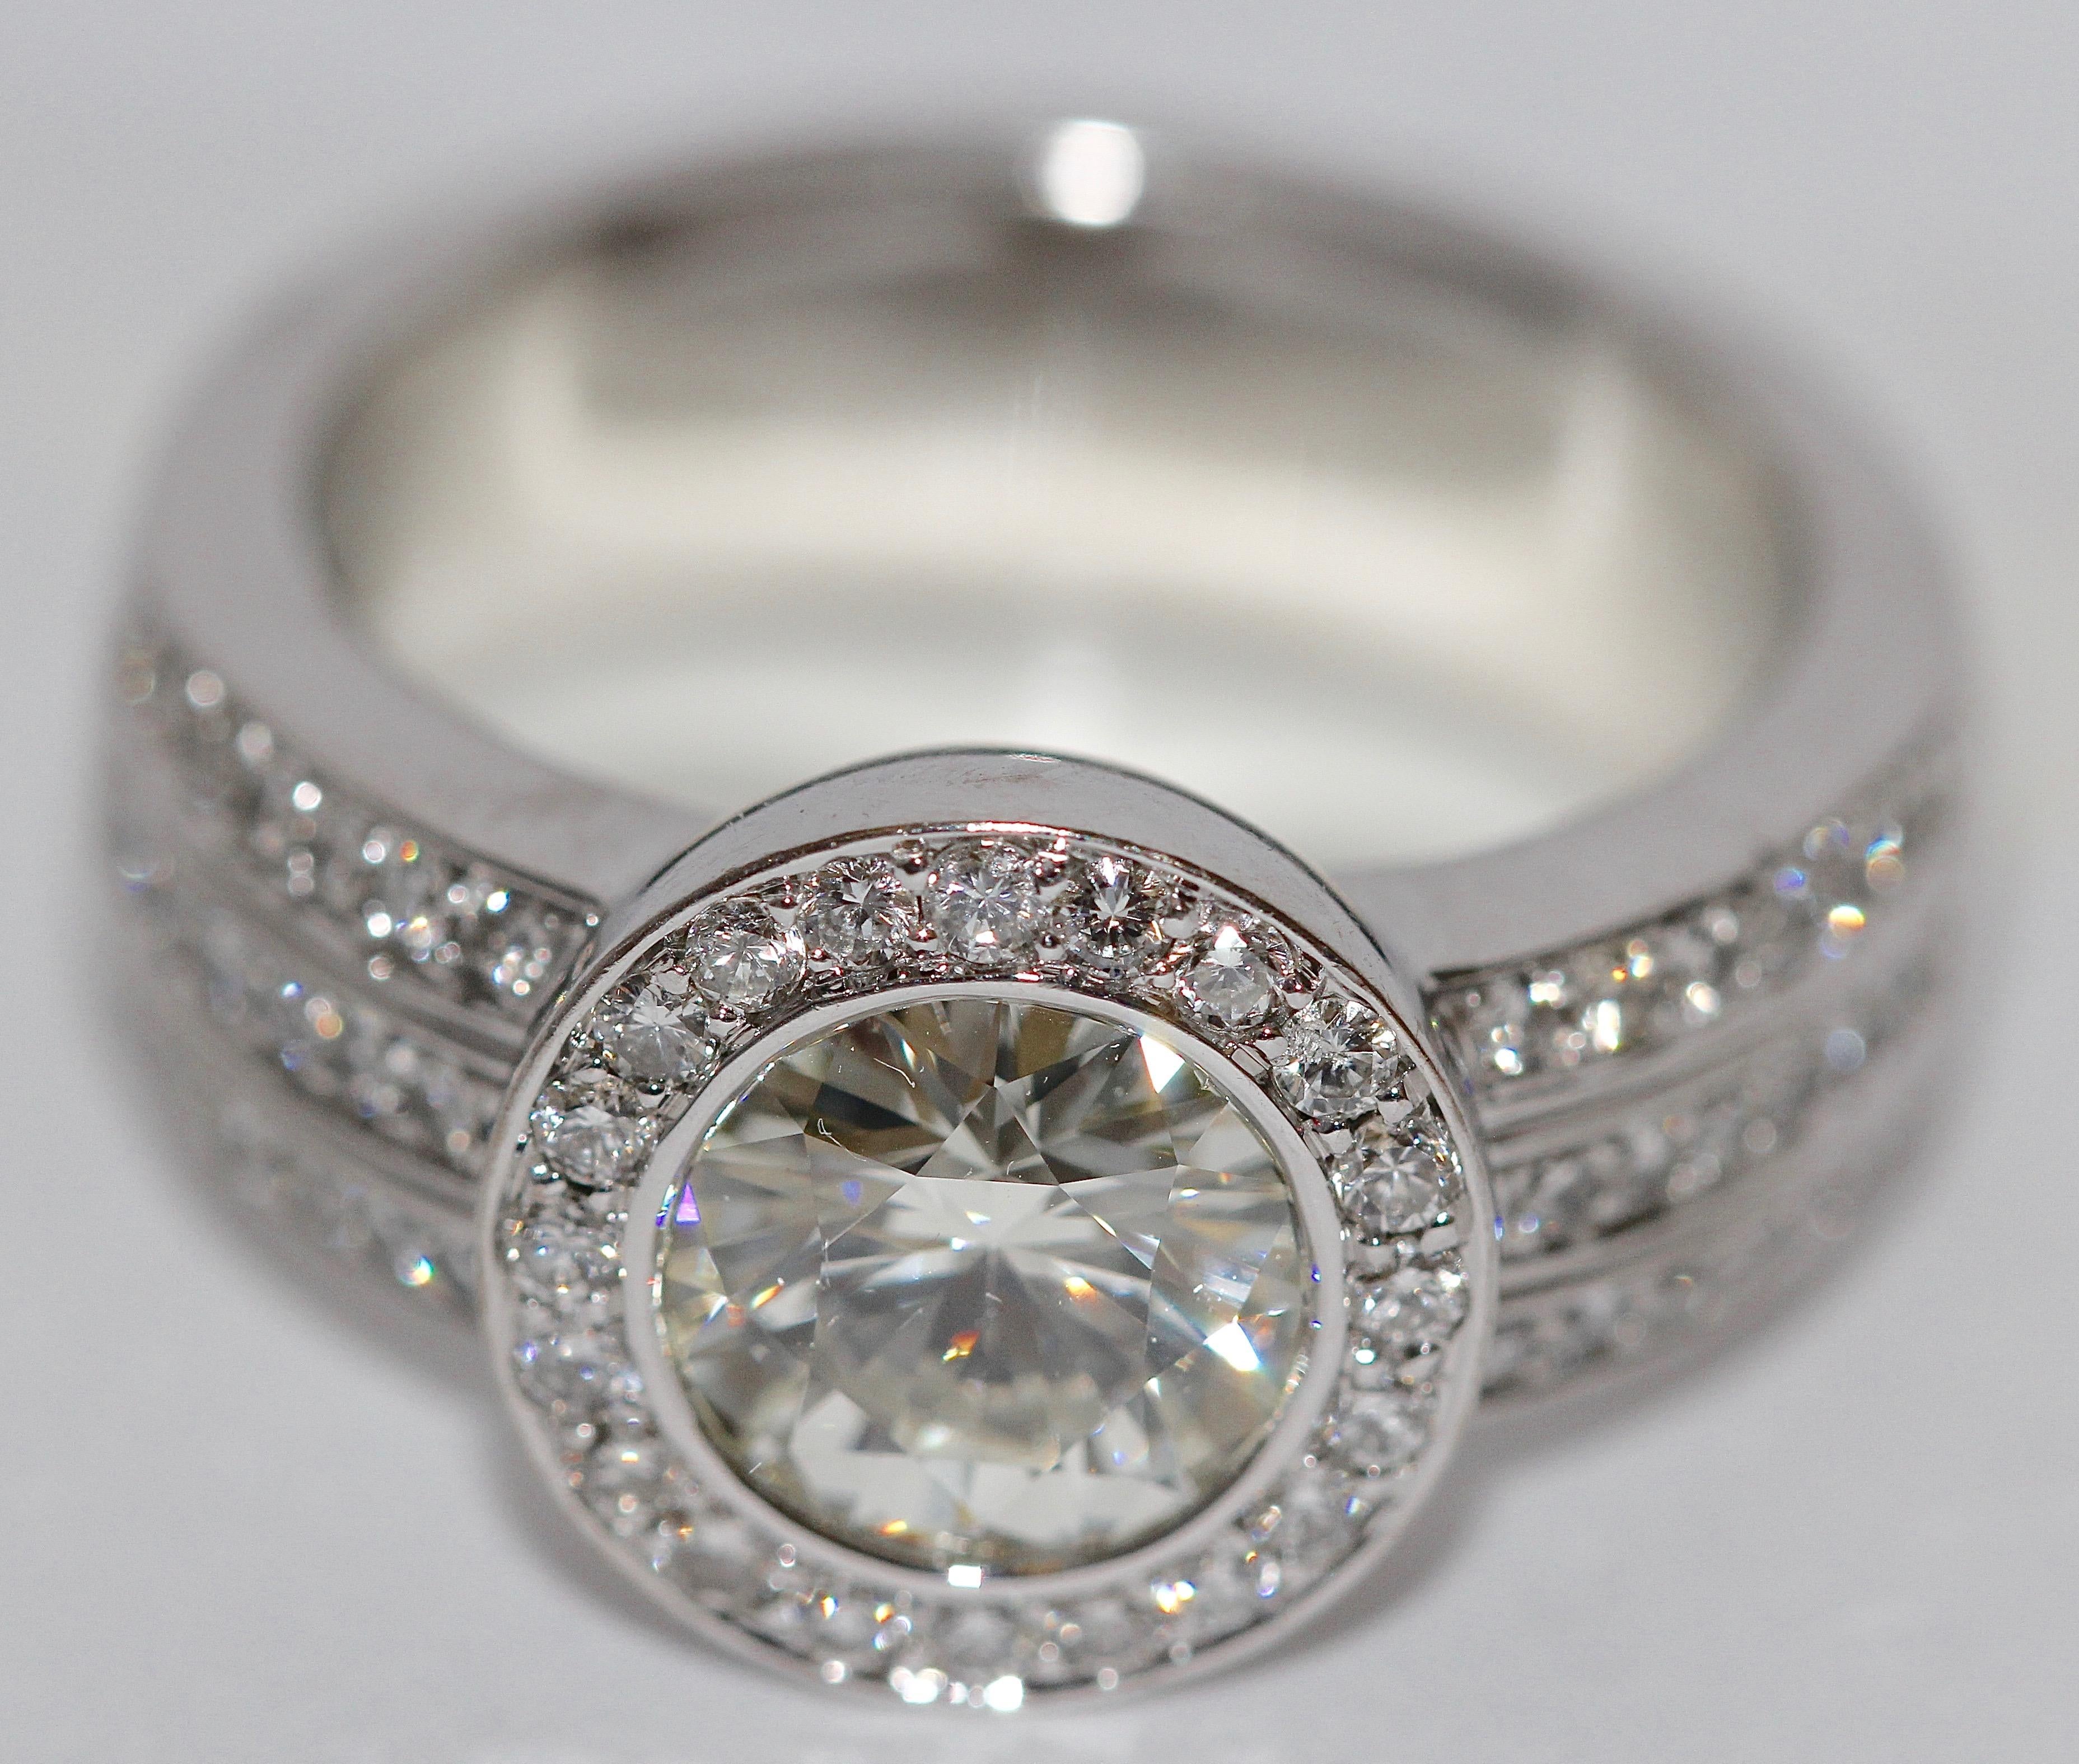 6.8-carat milano diamond engagement ring